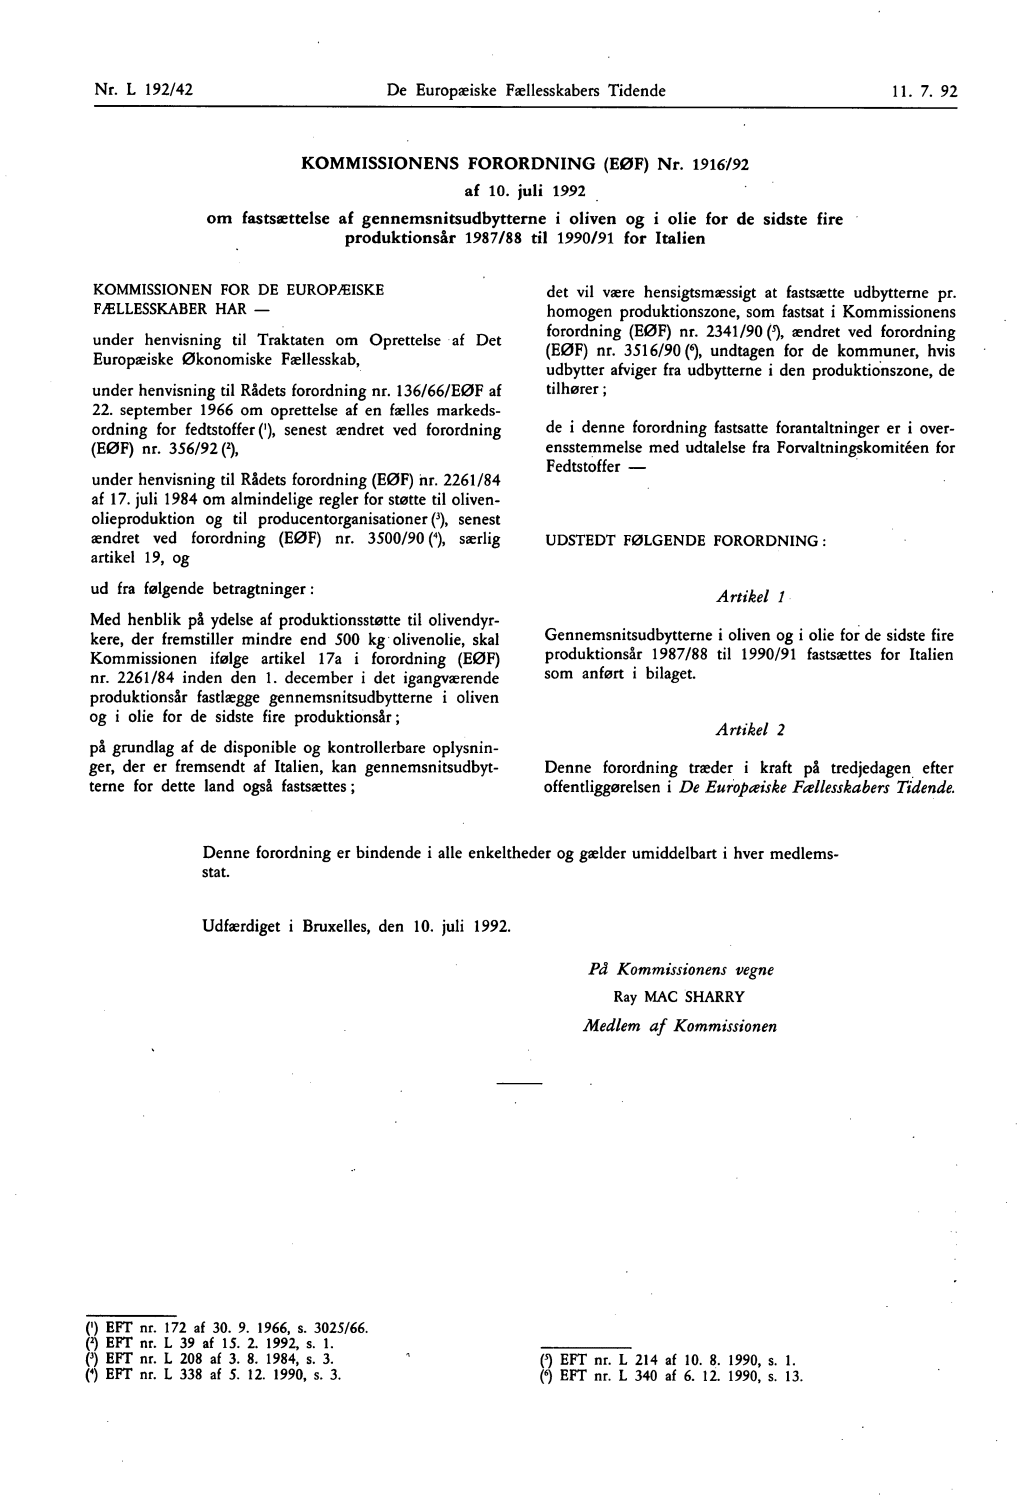 V) EFT Nr. L 338 Af 5. 12. 1990, S. 3